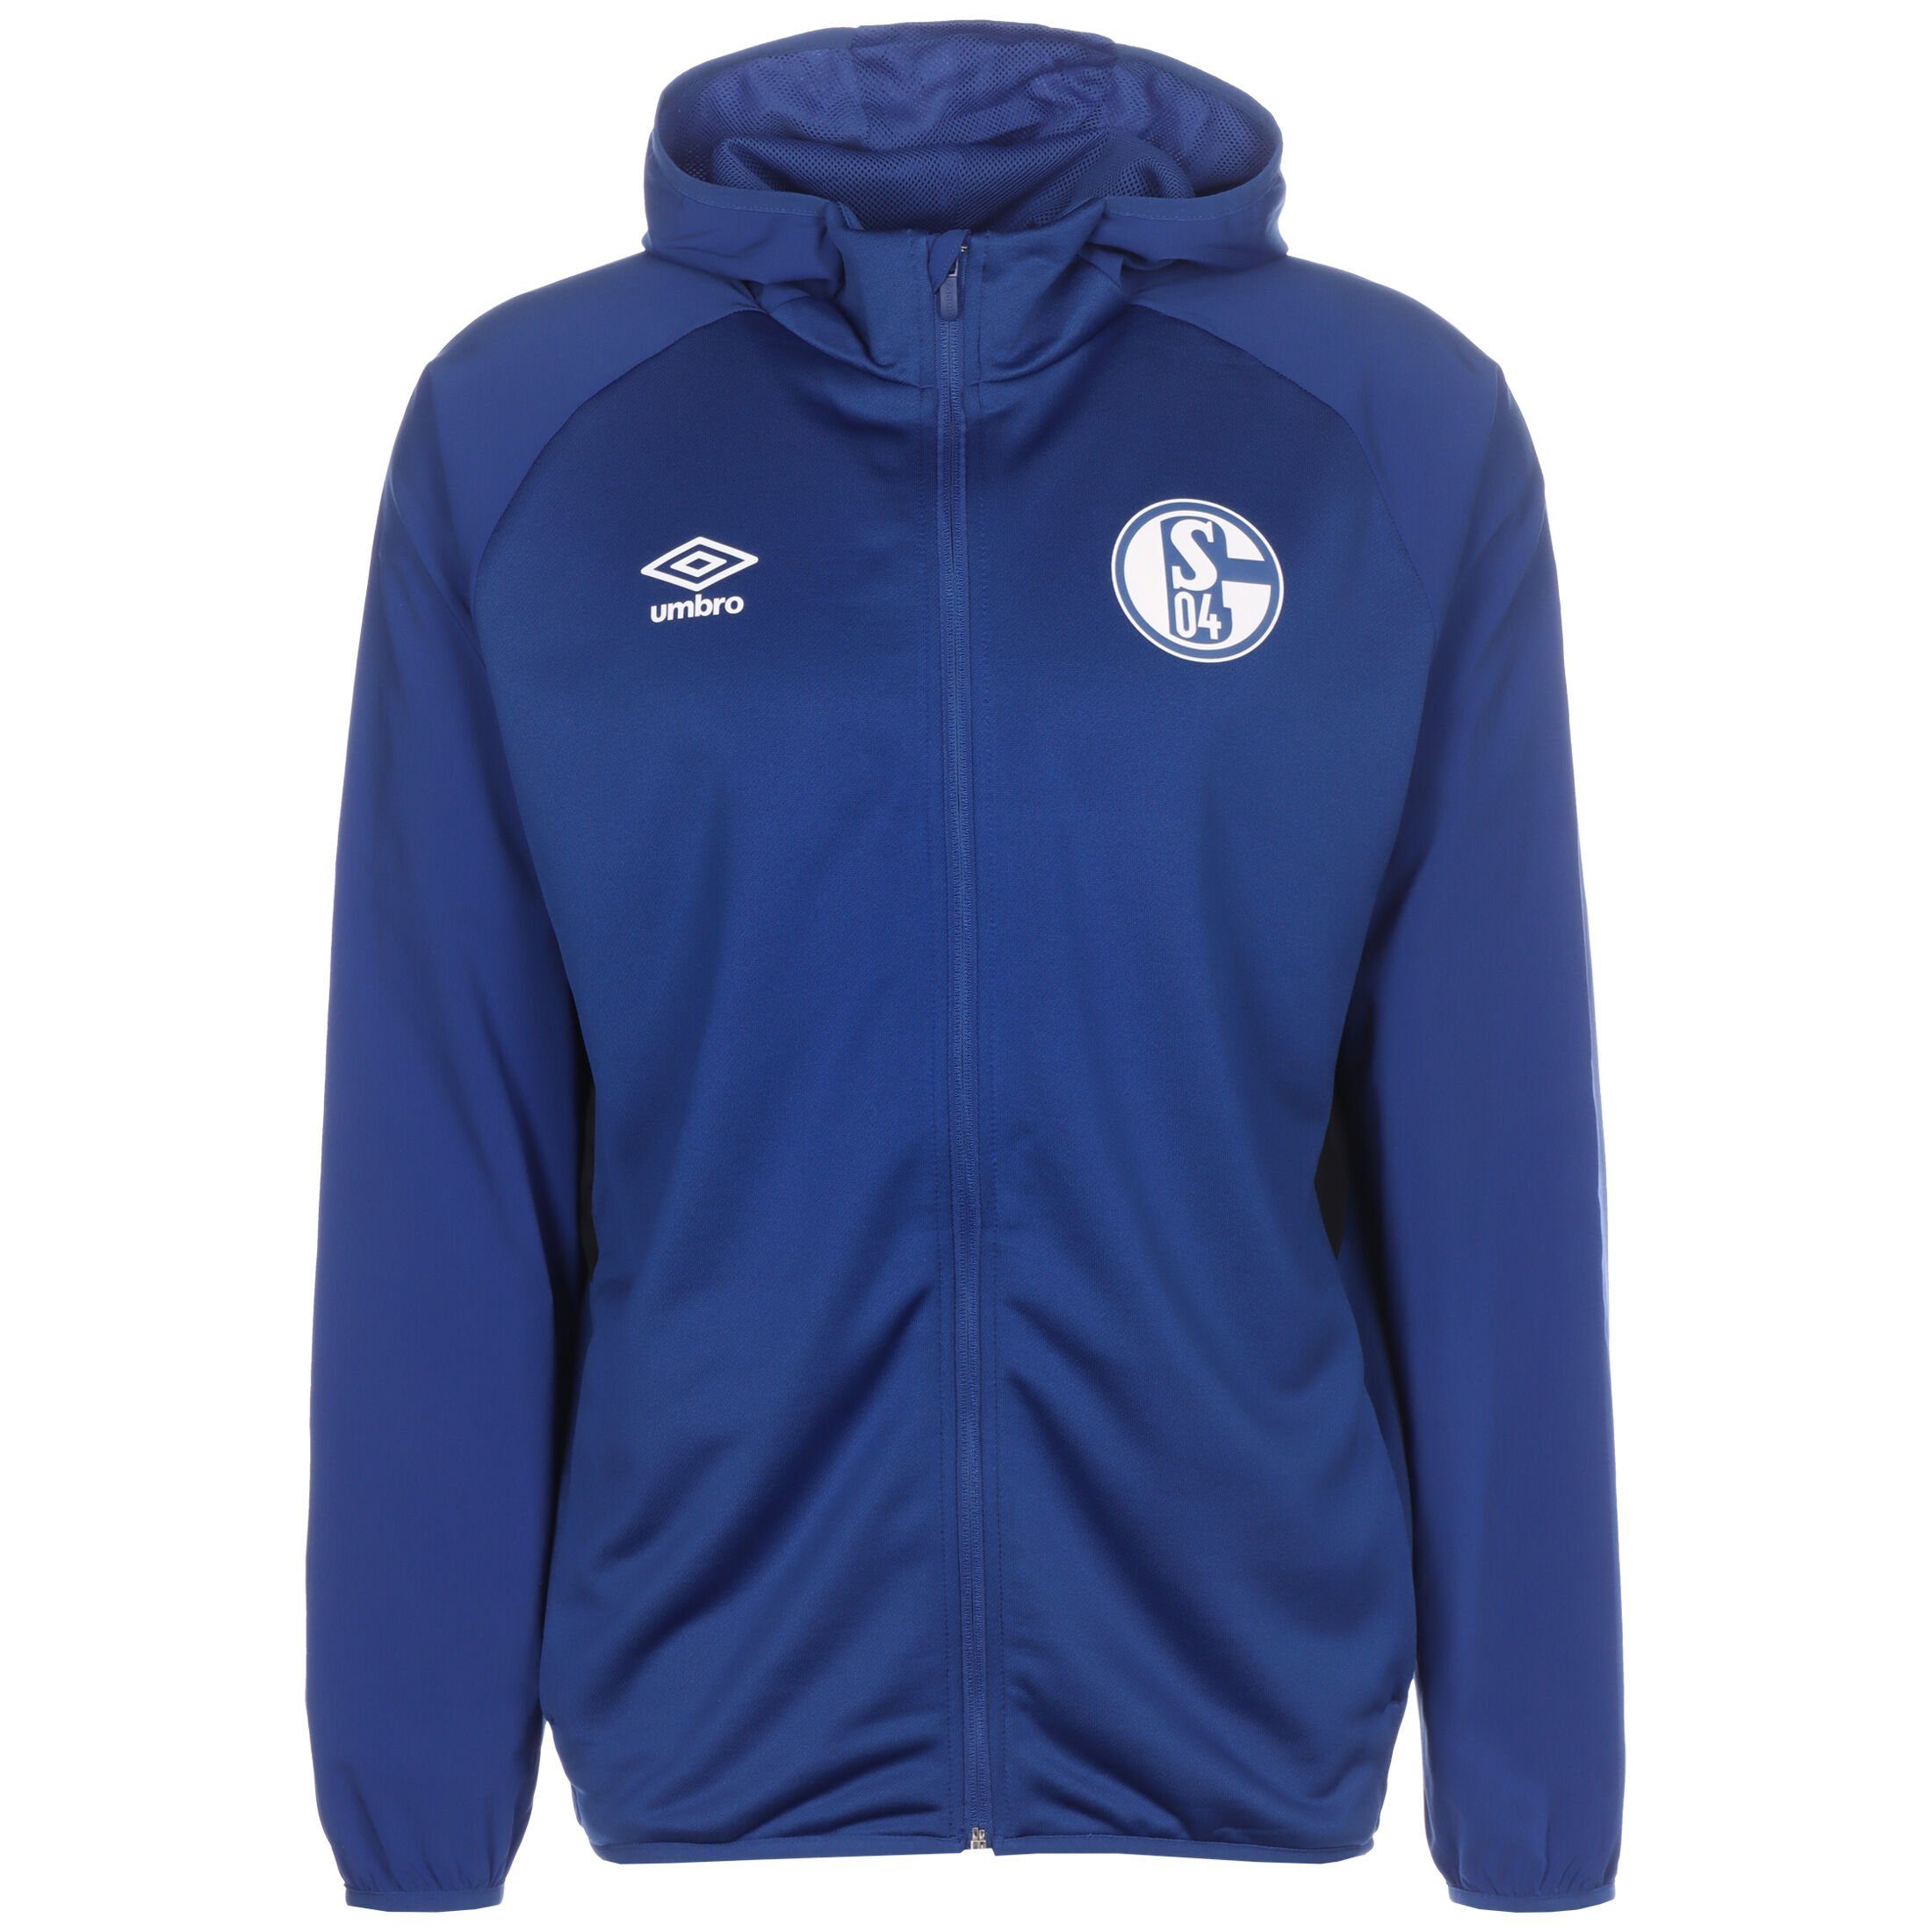 Umbro Sweatjacke FC Schalke 04 Kapuzenjacke Herren blau / schwarz